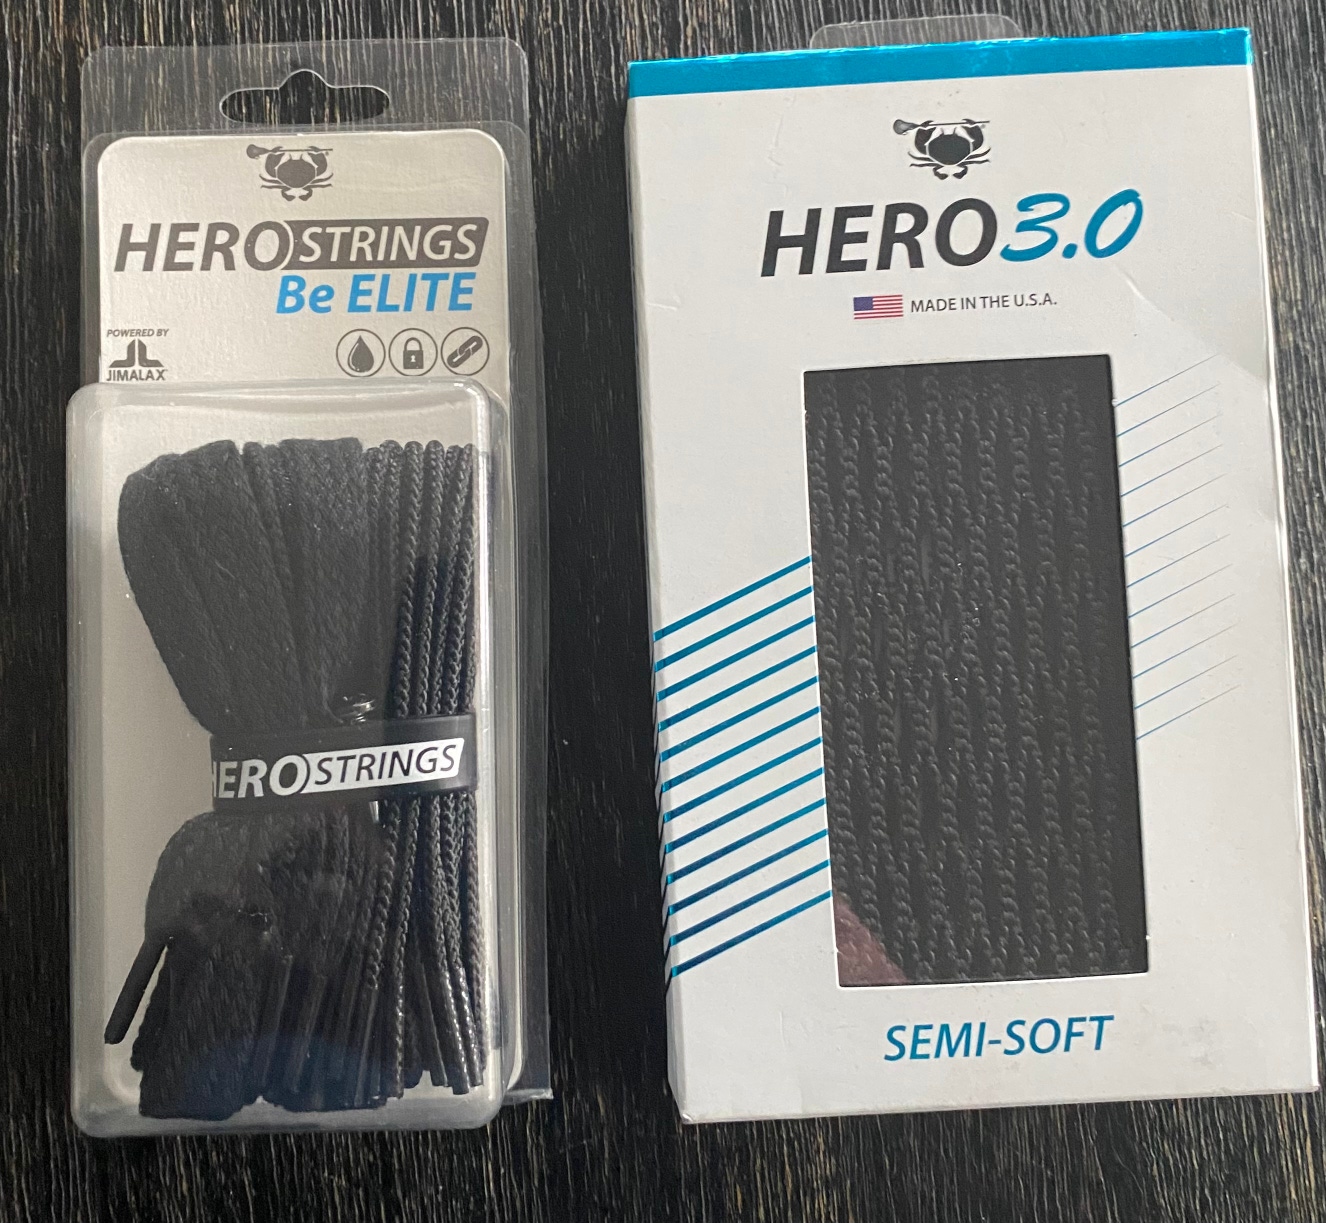 ECD Hero 3.0 Semi Soft Lacrosse Mesh and String Kit.  Brand New - Never Opened, Black